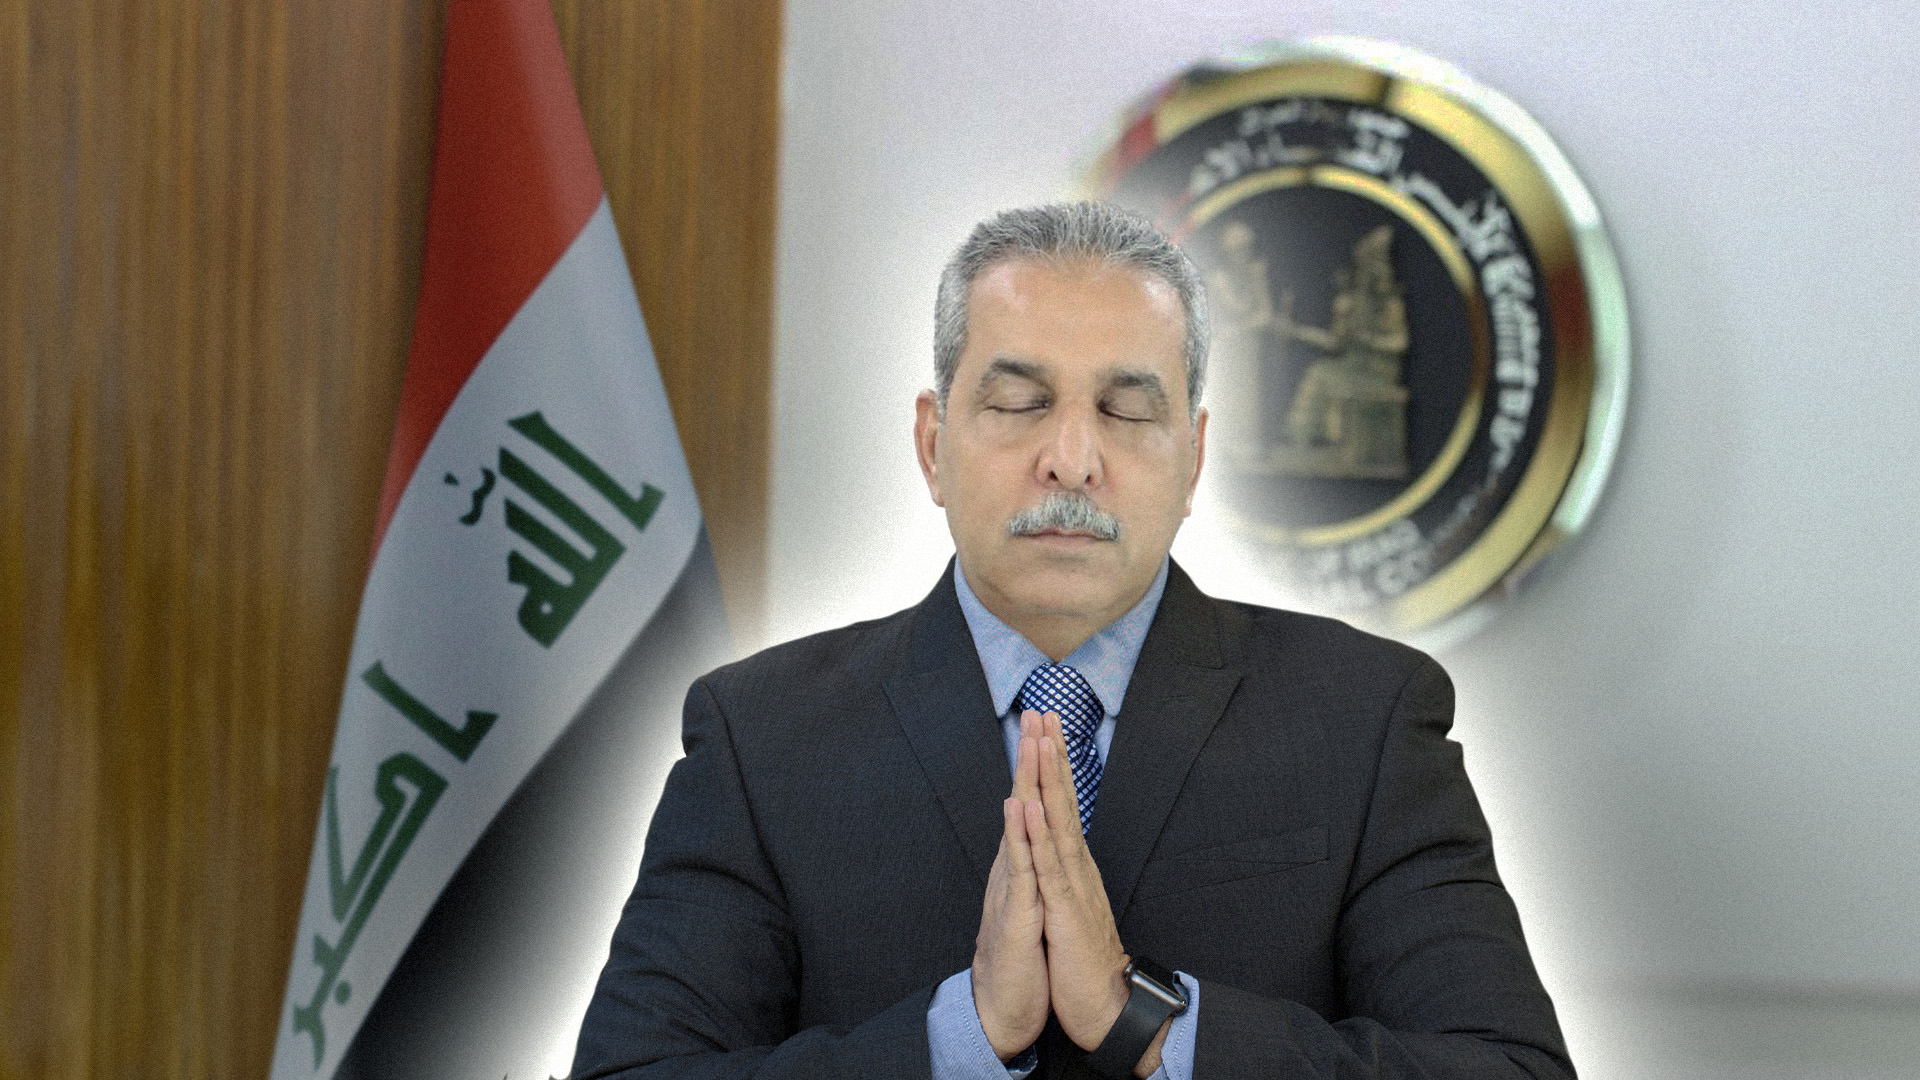 صورة القضاء العراقي يصل إلى السلام الذاتي بتوقفّه عن إطلاق الأحكام على الآخرين